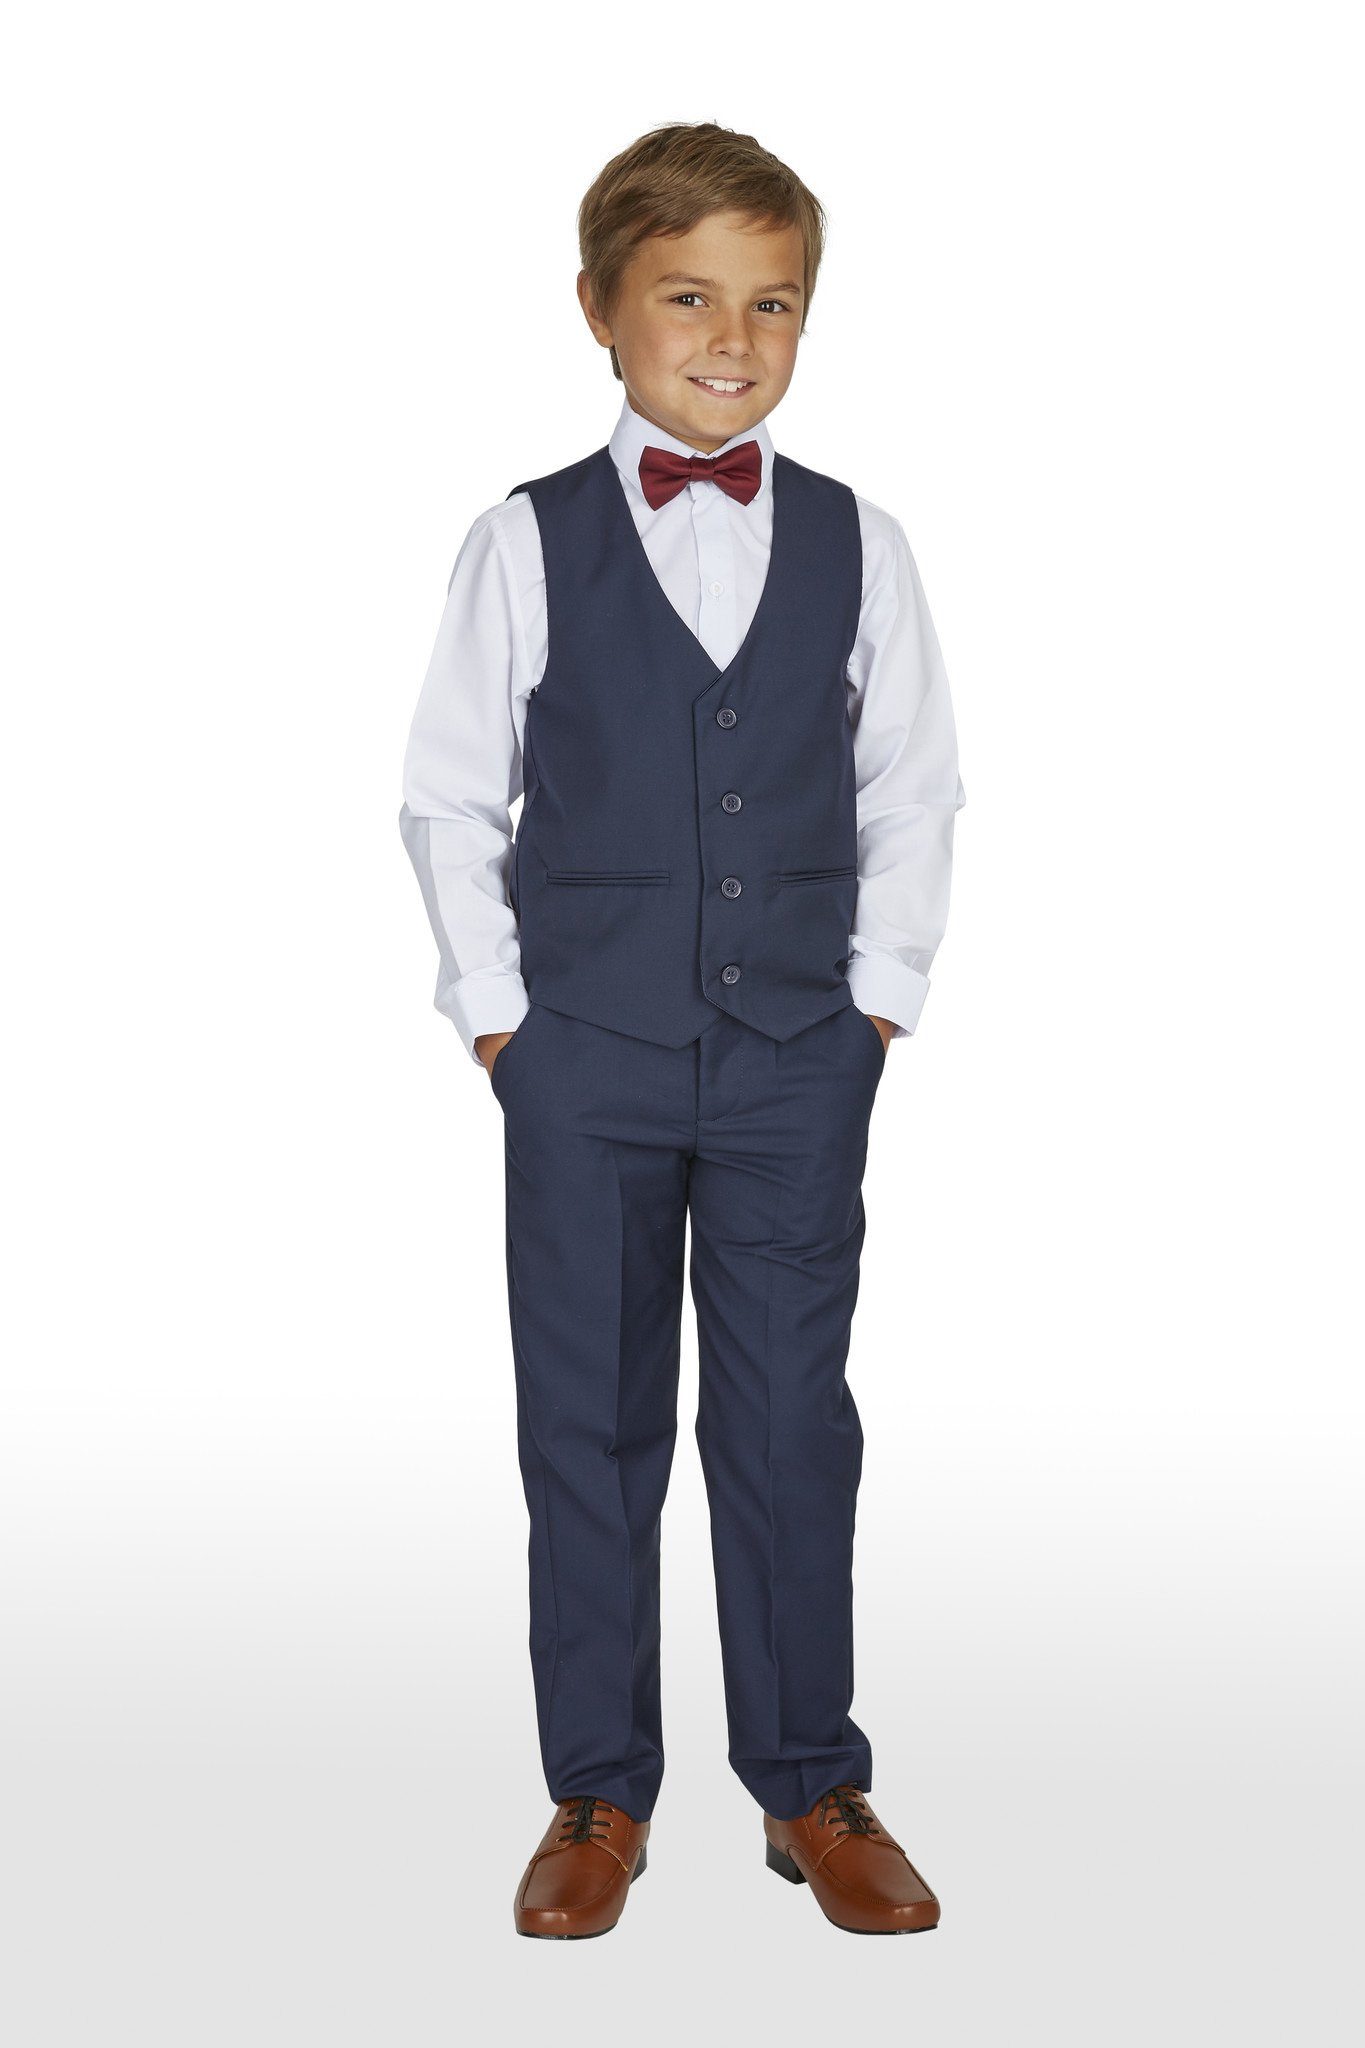 Melli-Trends Kinderanzug Jungen Anzug, 4-teilig, Kommunionanzug, blau (Hemd, Weste, Hose und Fliege) festlich, elegant